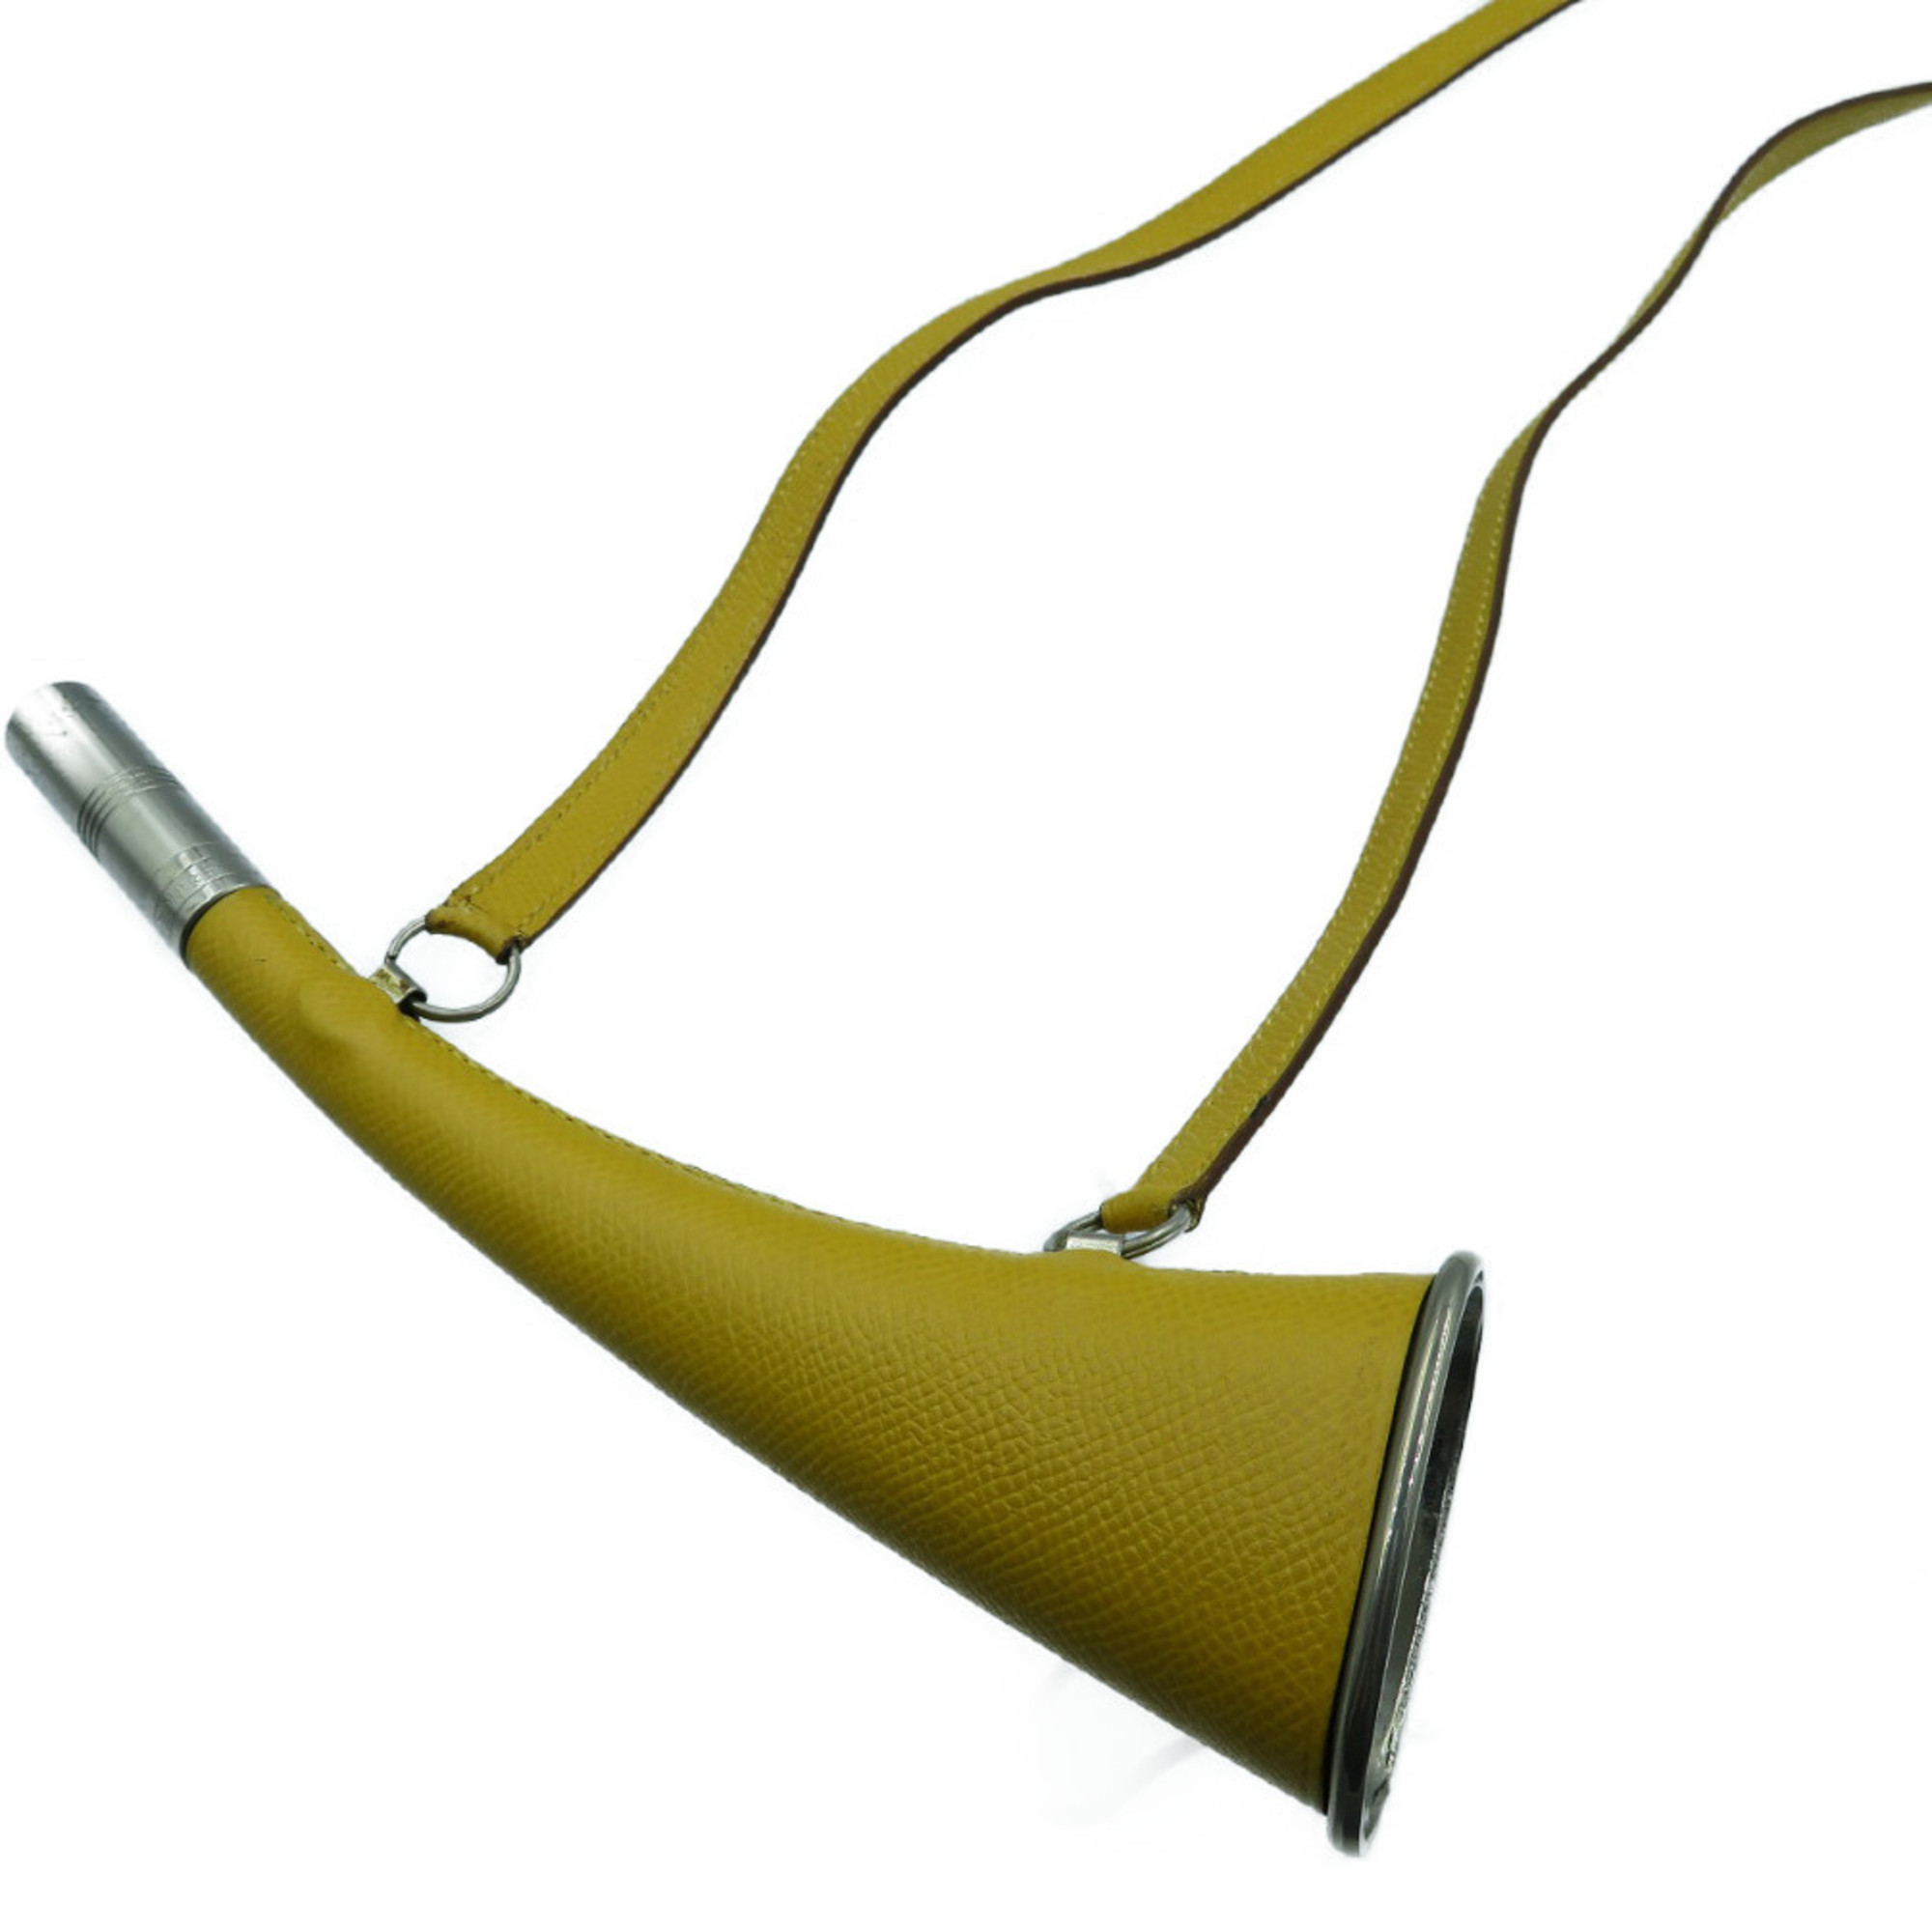 Hermes Kushbel Trumpet Horn Necklace Choker B Engraved Yellow 0064 HERMES